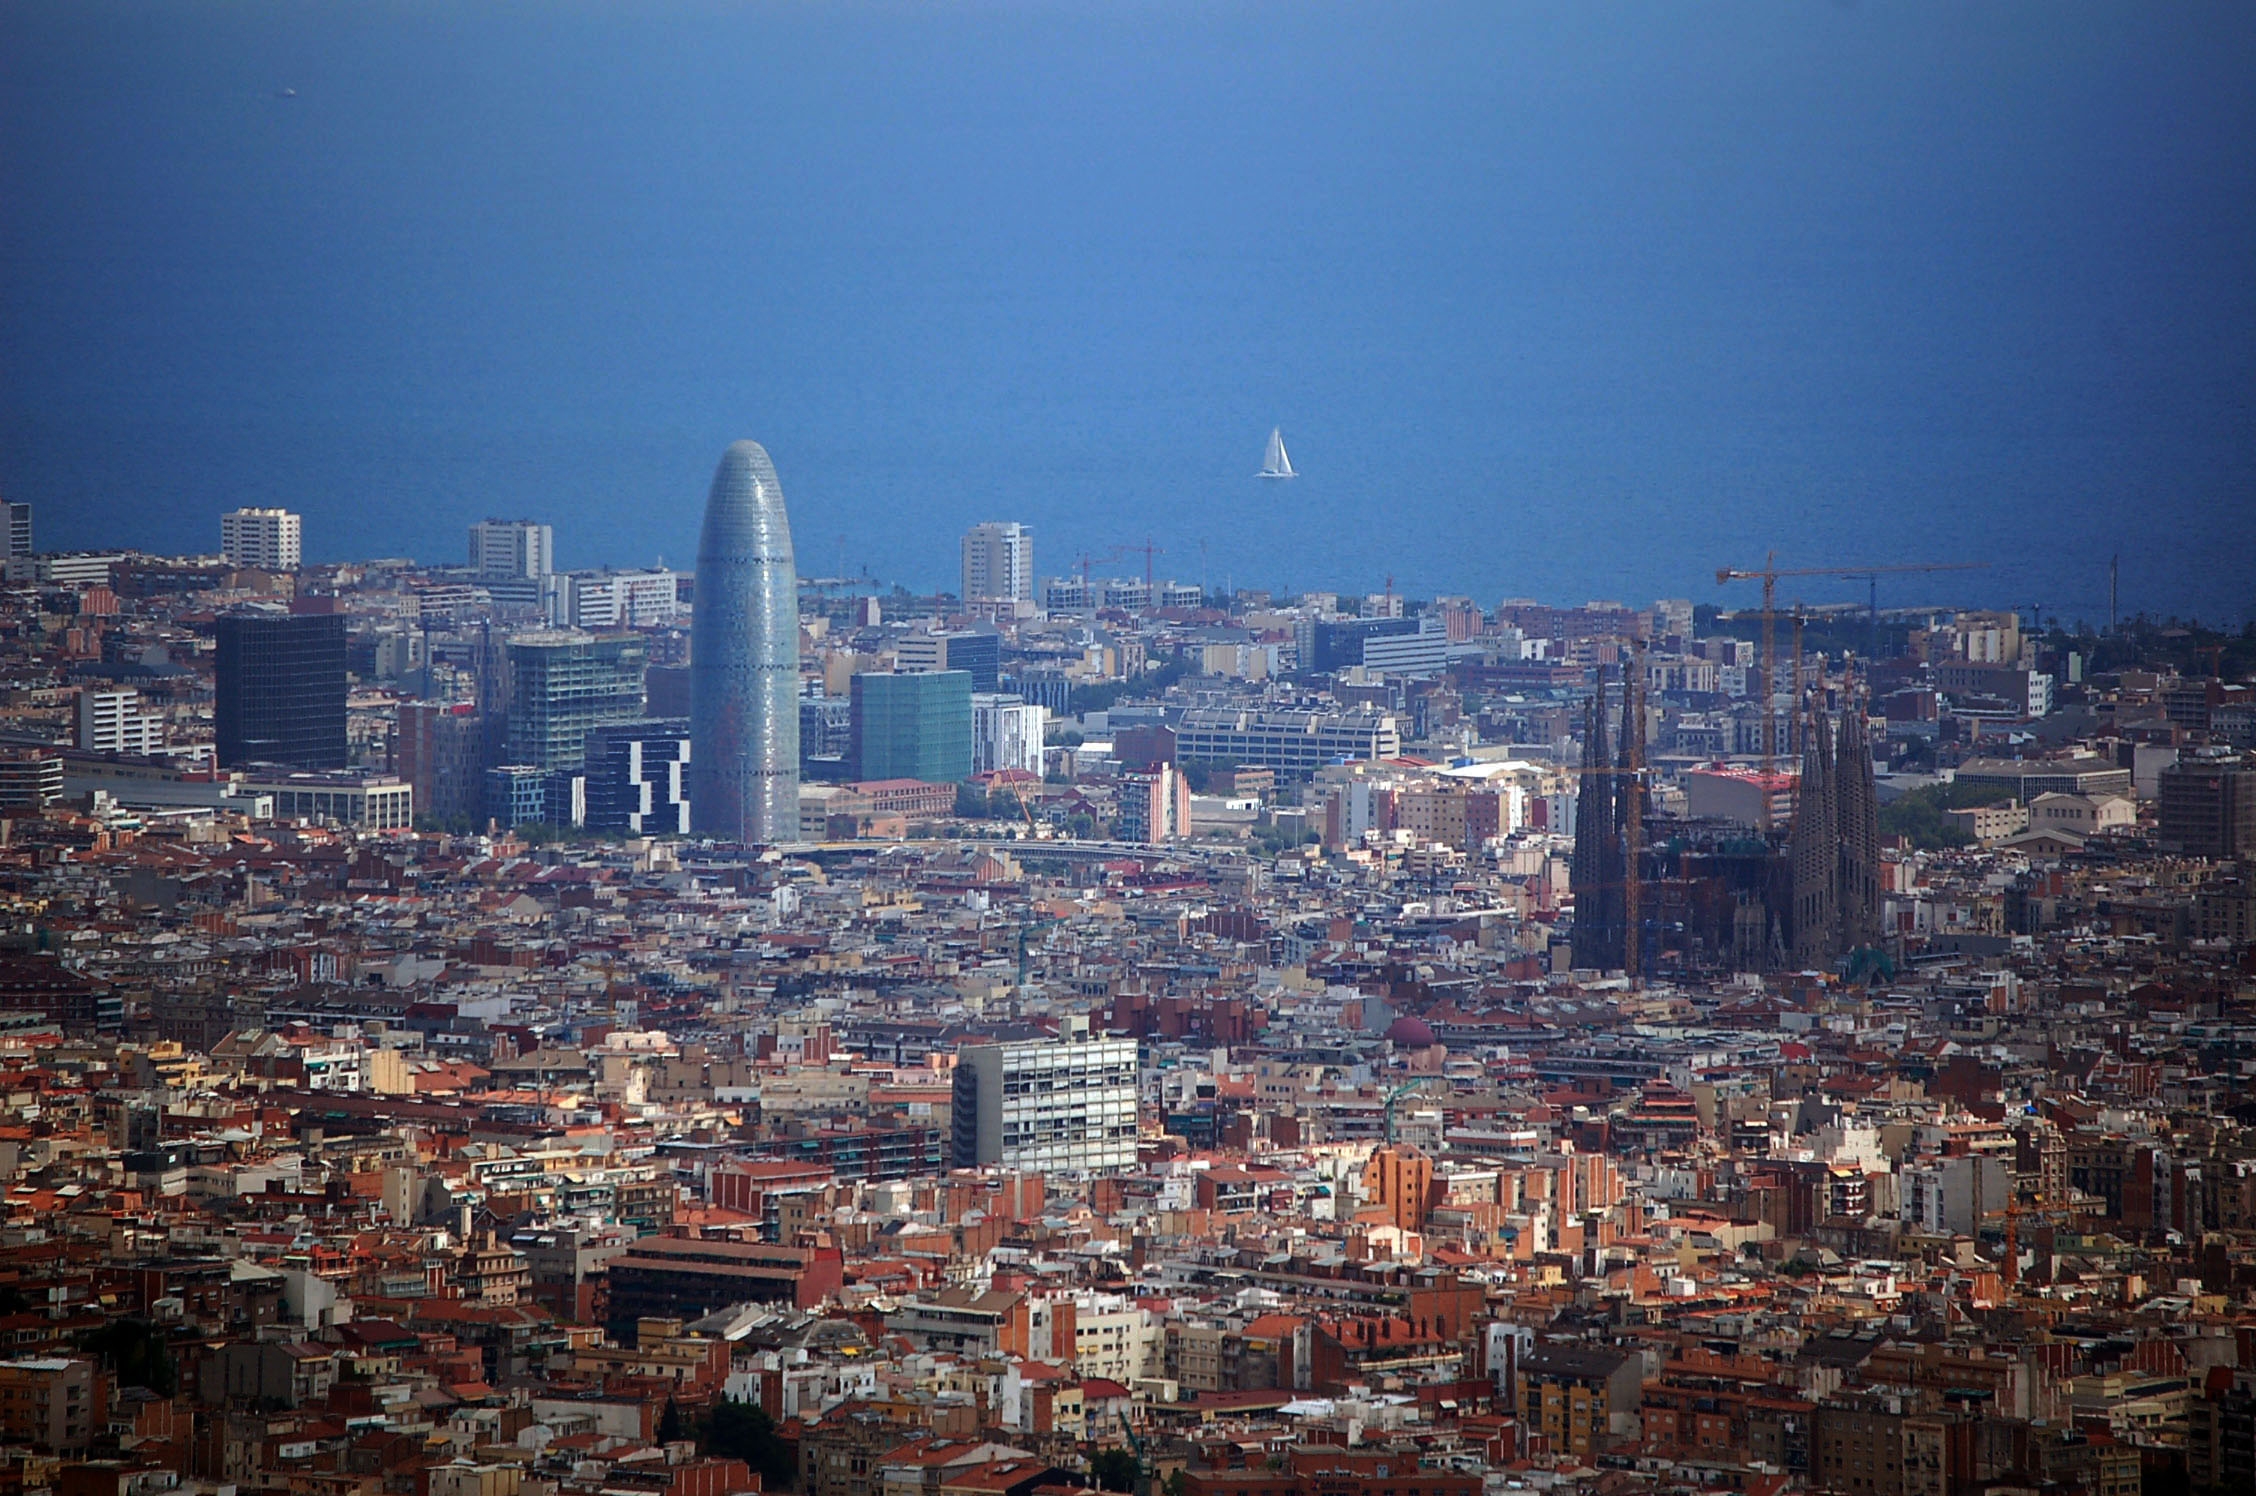 La vuelta a los emergentes, vista aún prematura en la Jornada de Estrategia de Inversis en Barcelona